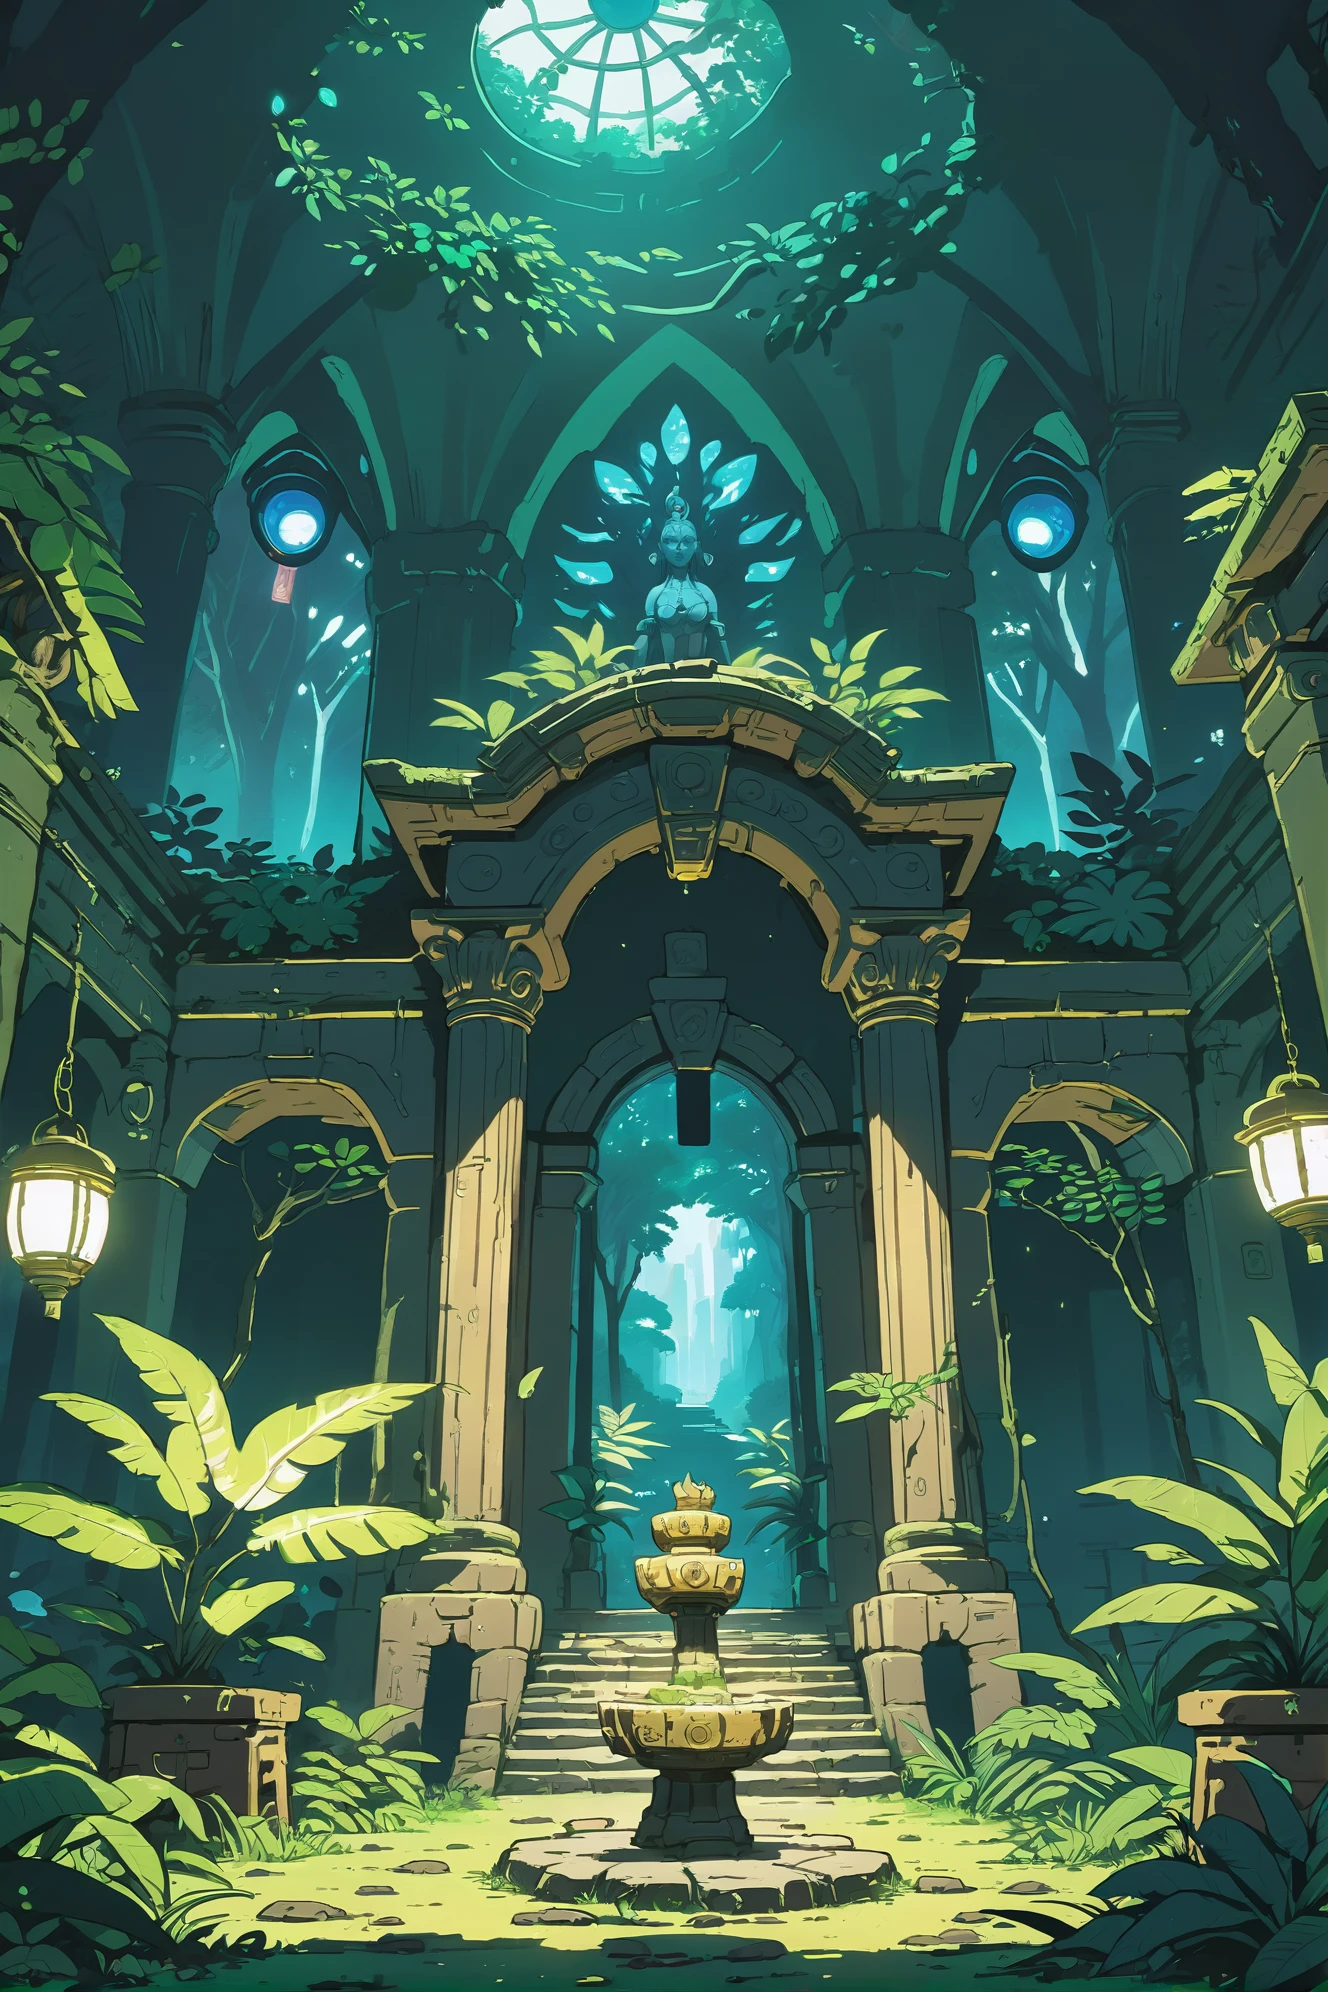 Аниме стиль, сплошные цвета, резкий контур, плоская штриховка, хорошо освещенный интерьер, в таинственном скрытом храме в джунглях